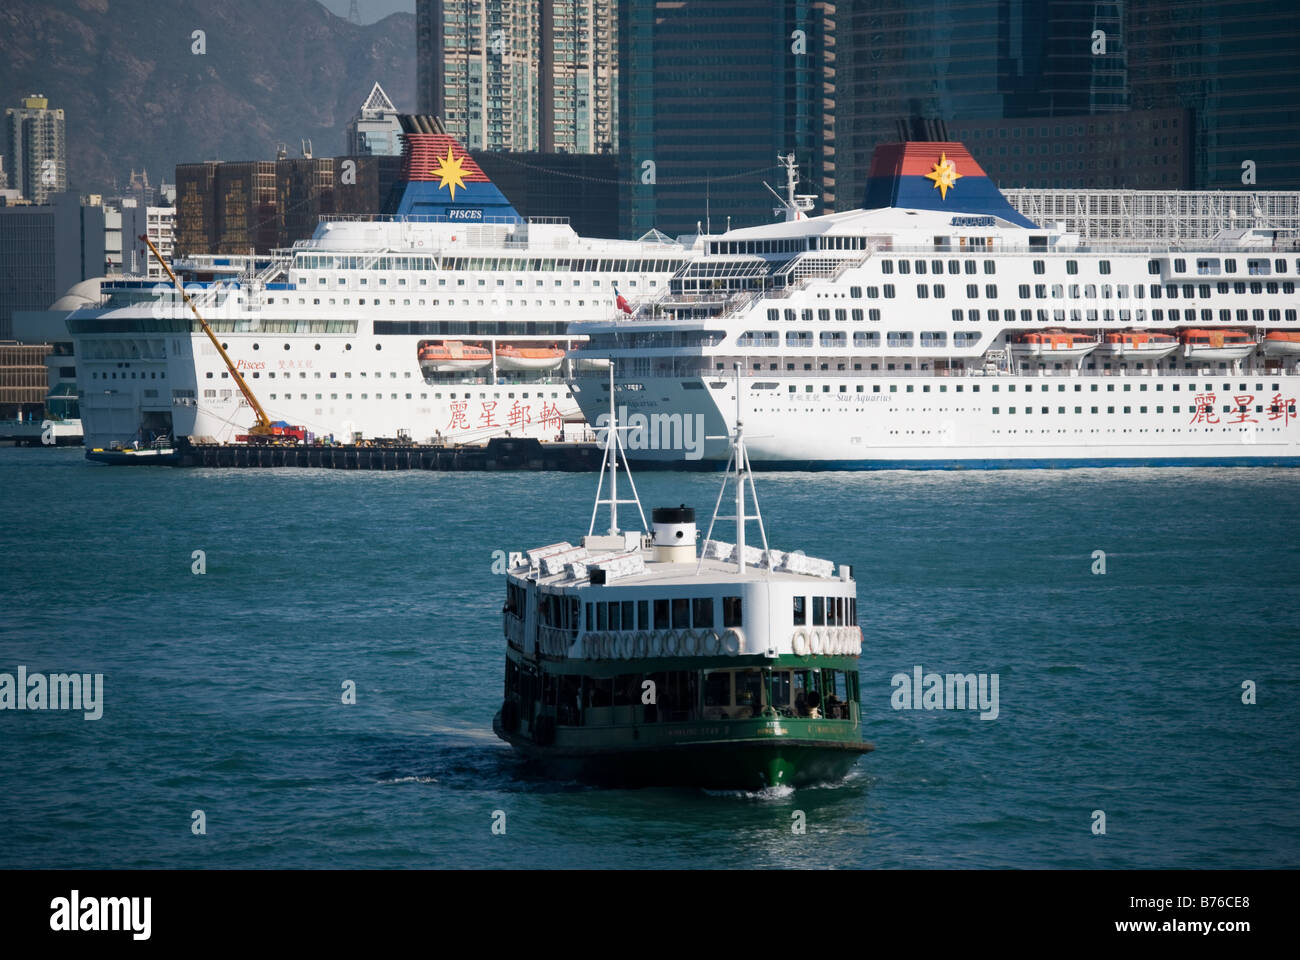 Star Ferry Crossing da Tsim Sha Tsui, Central Pier, Sheung Wan, Victoria Harbour, Isola di Hong Kong, Hong Kong, Cina Foto Stock